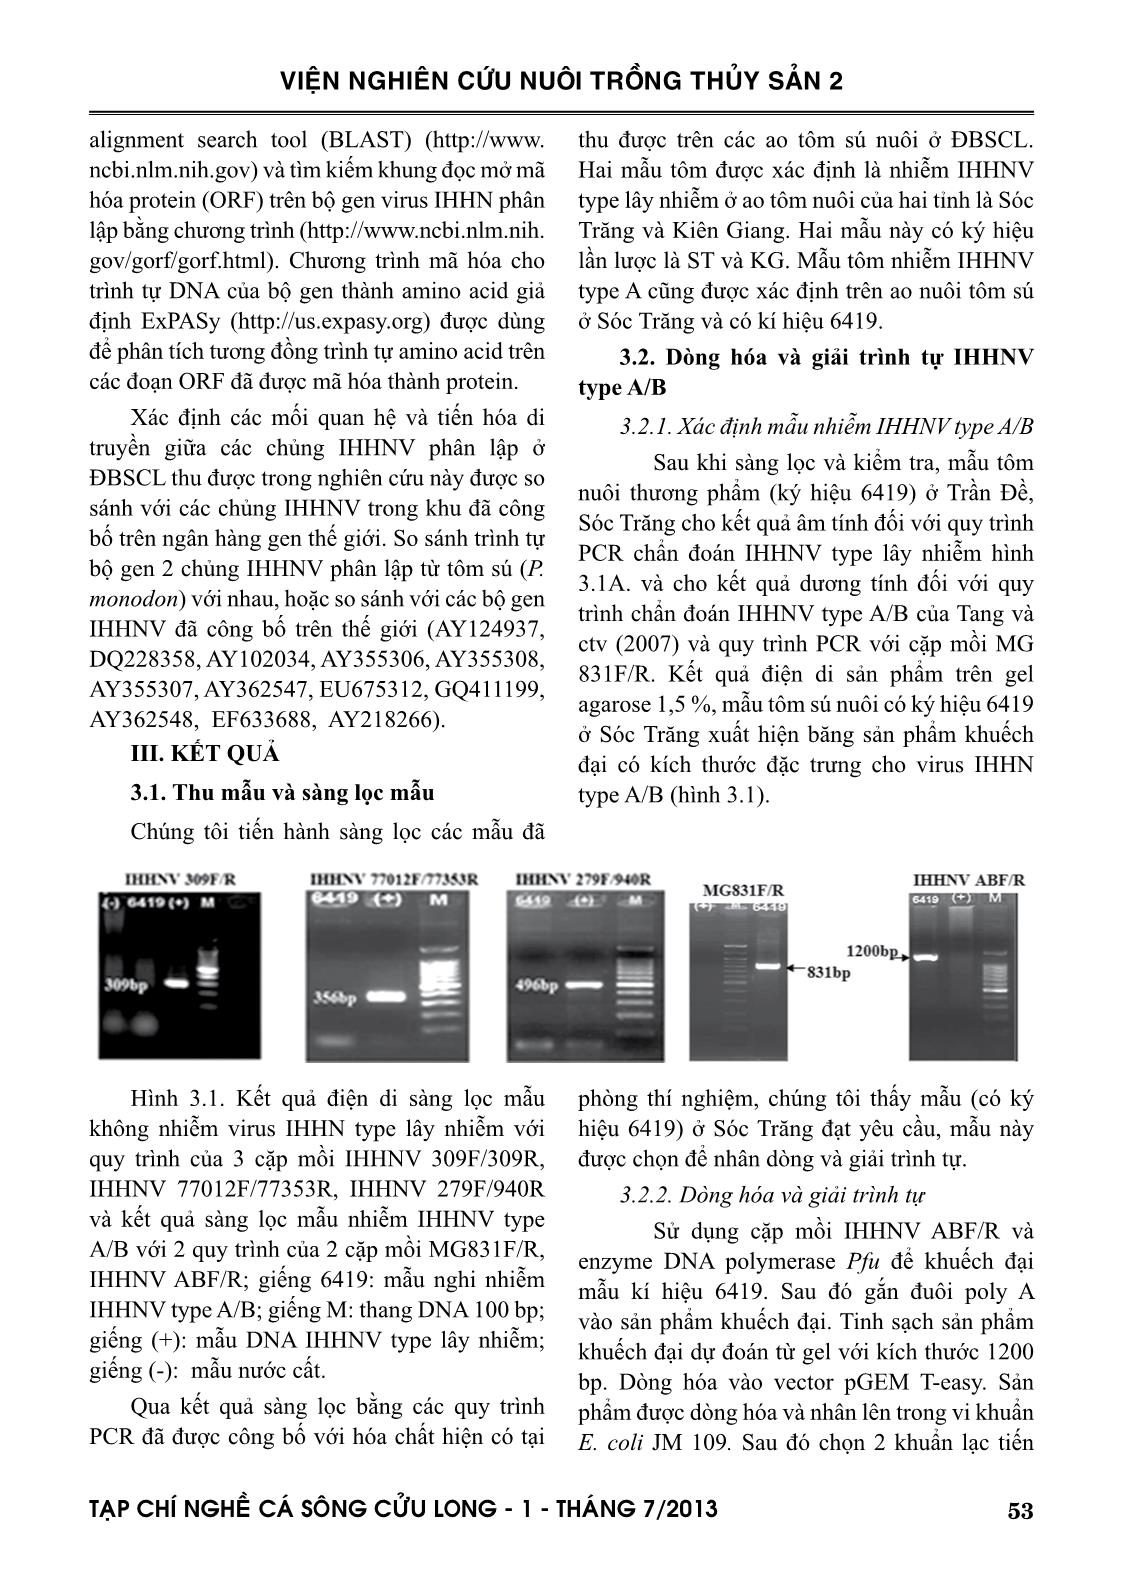 Đặc trưng di truyền của chủng IHHNV phân lập tôm nuôi ở đồng bằng sông Cửu Long trang 5